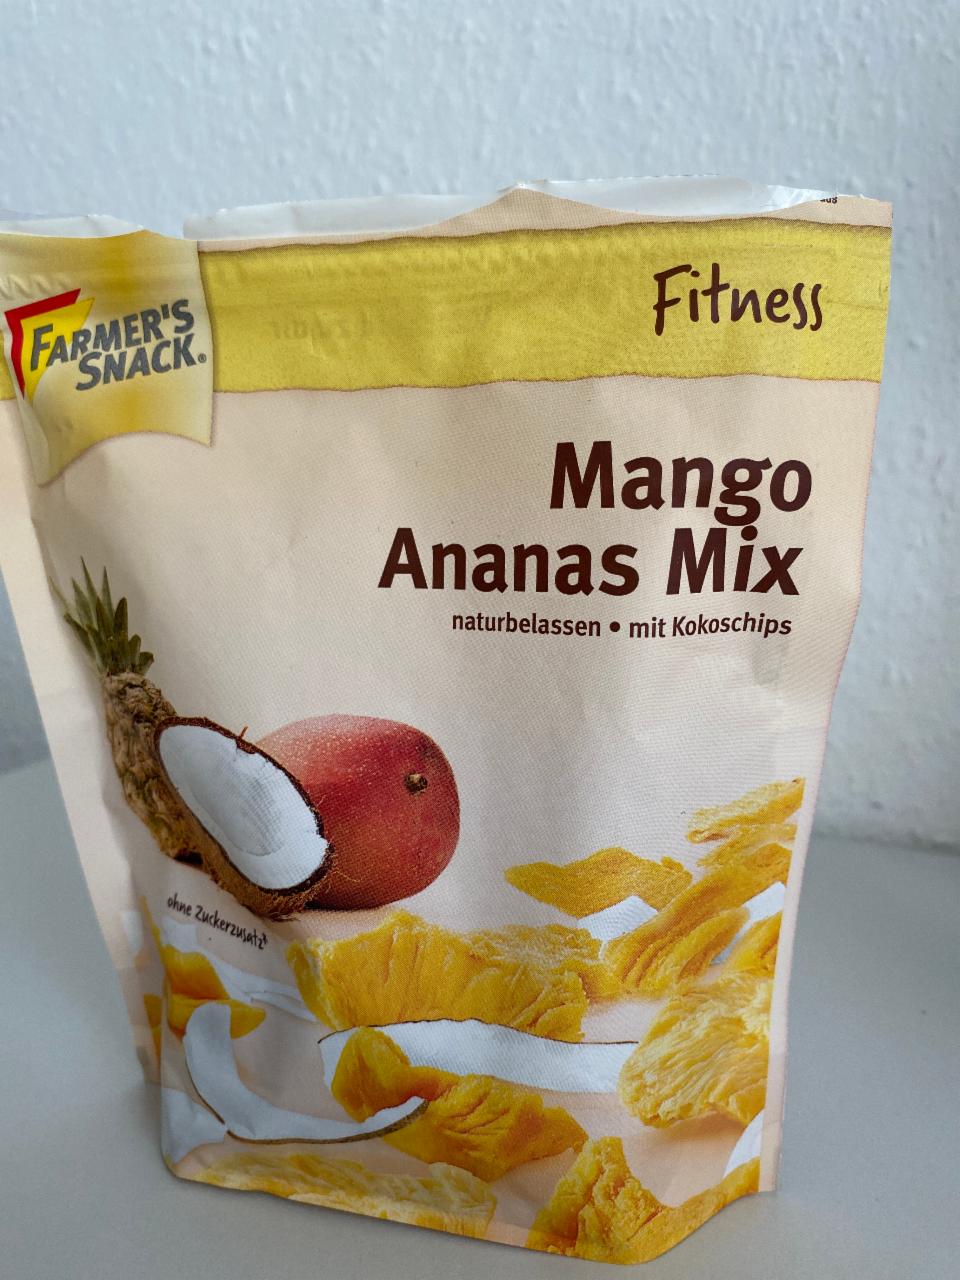 Фото - Микс манго-ананас сушеные Mango Ananas Mix Farmer's Snack